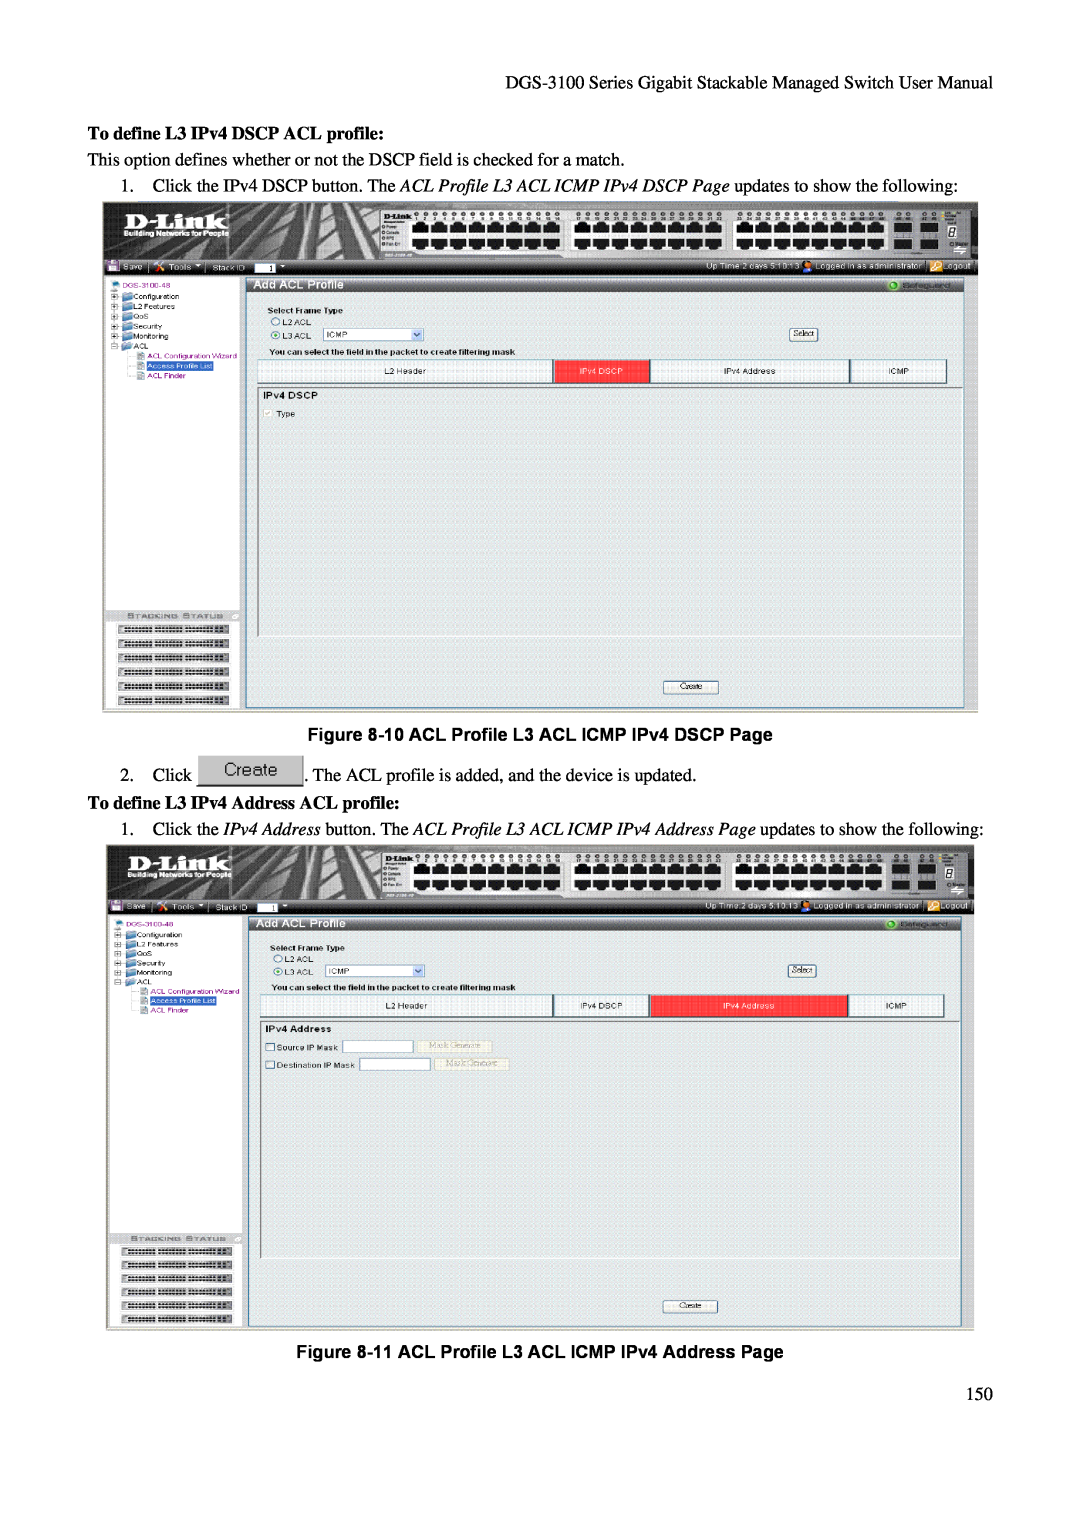 D-Link DGS-3100 user manual To define L3 IPv4 DSCP ACL profile, 10 ACL Profile L3 ACL ICMP IPv4 DSCP Page 